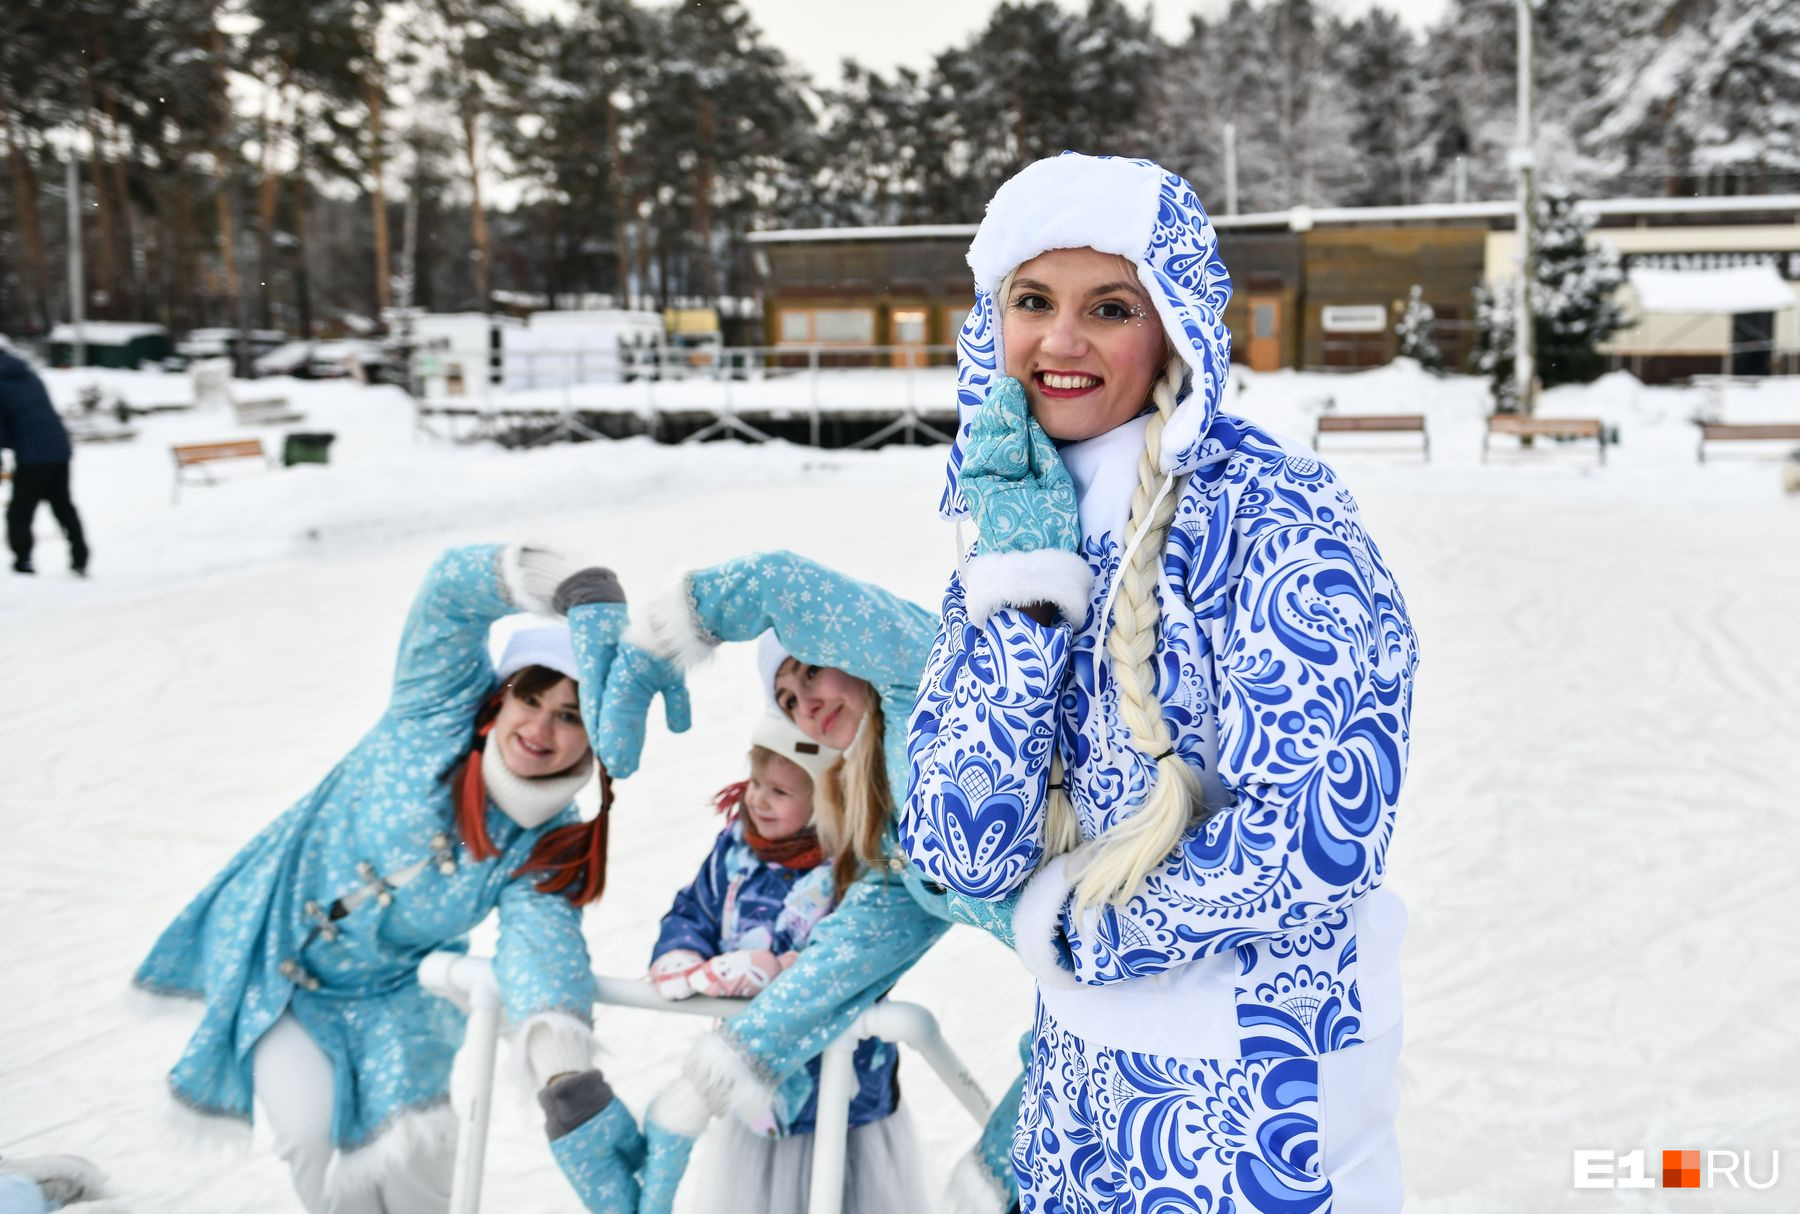 Жителей Шарташа порадовали красотки в новогодних костюмах: не по-зимнему теплый фоторепортаж